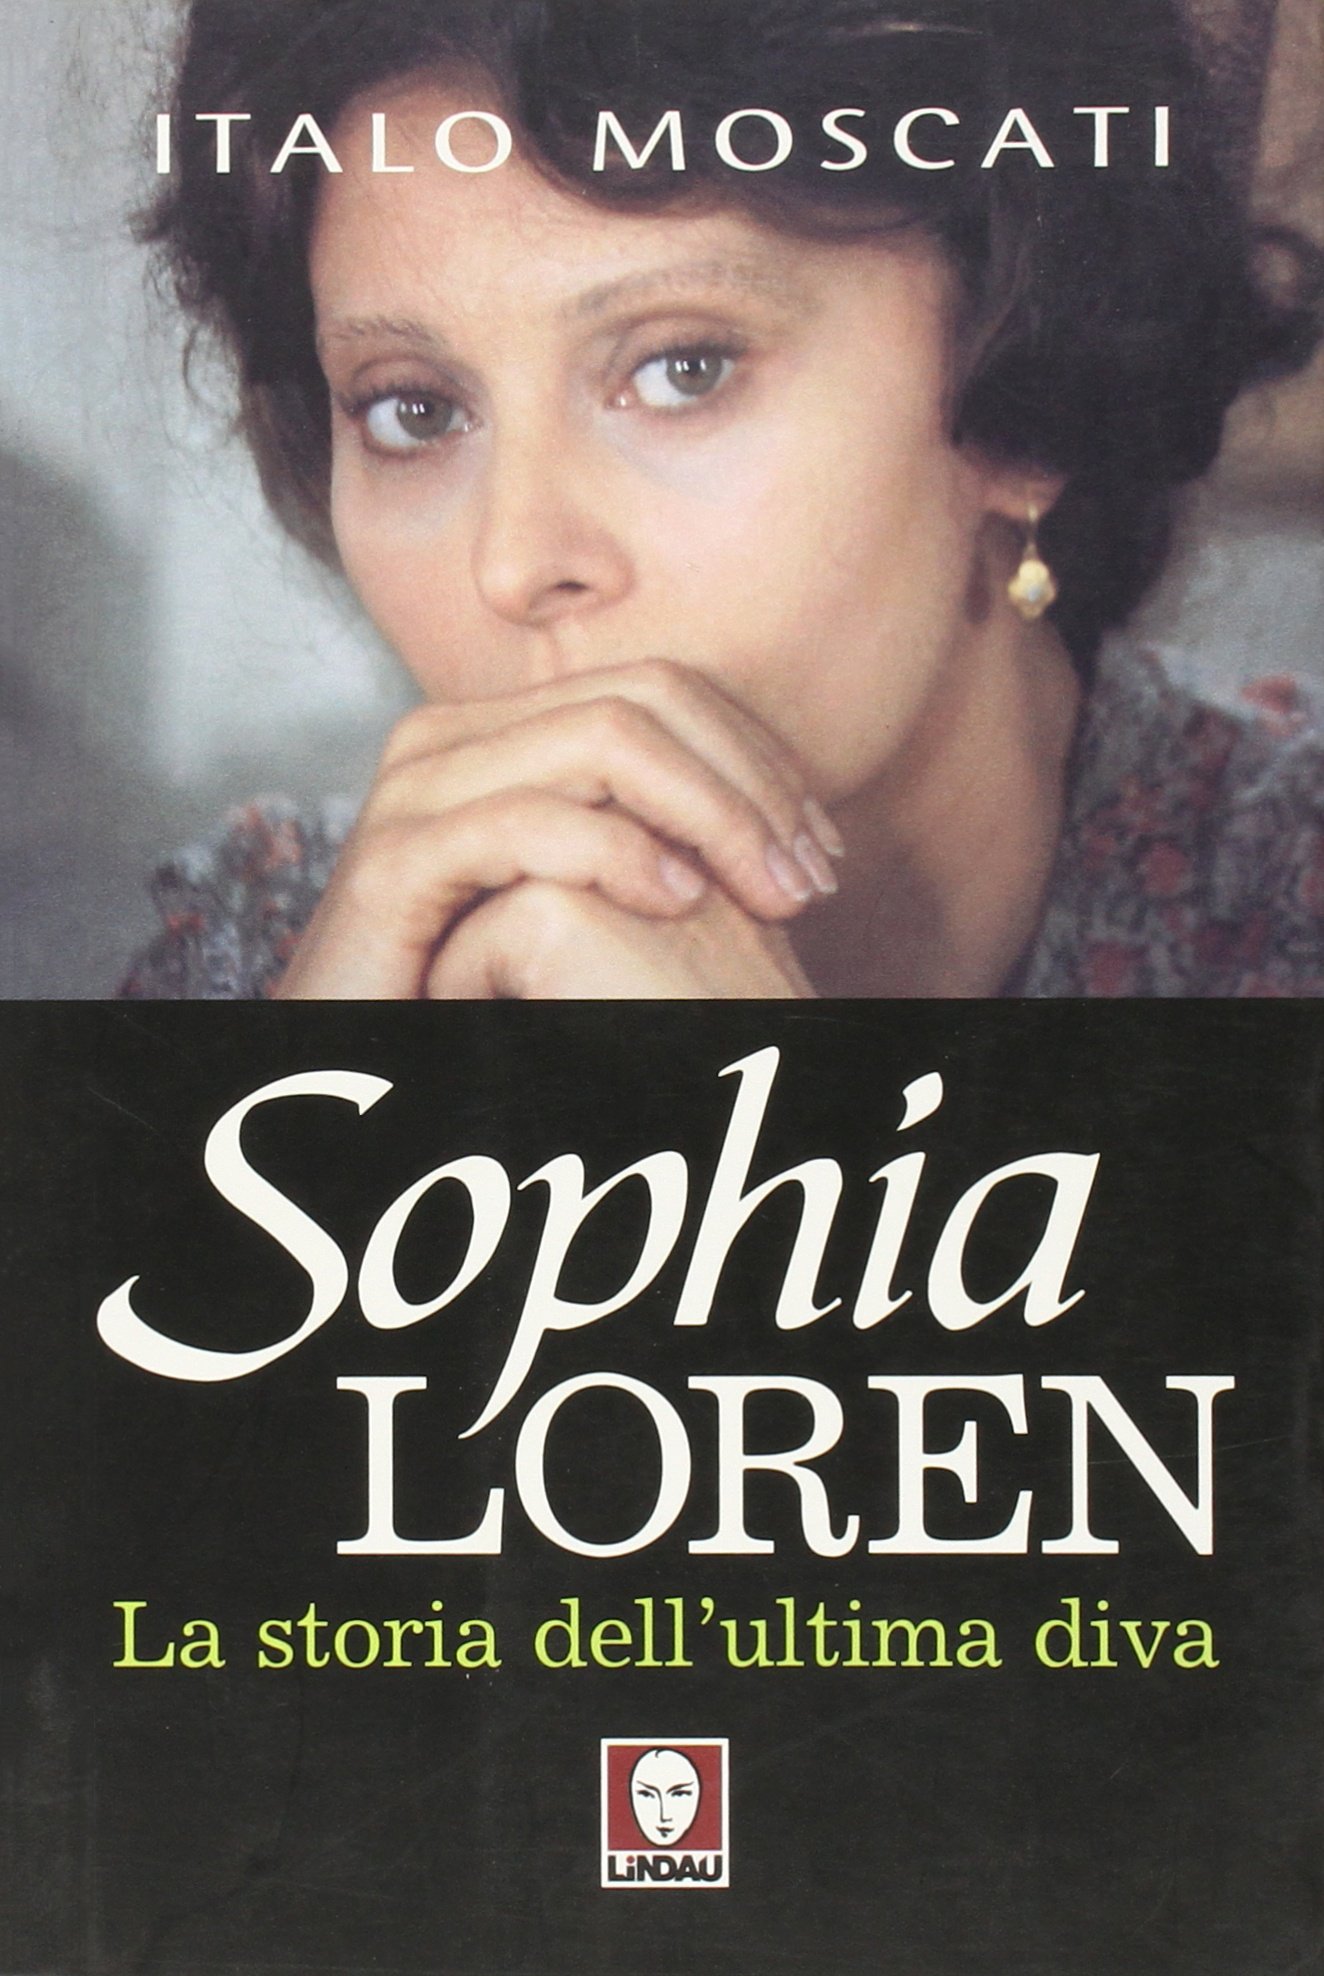 Libri Italo Moscati - Sophia Loren. La Storia Dell'Ultima Diva NUOVO SIGILLATO, EDIZIONE DEL 01/01/2005 SUBITO DISPONIBILE